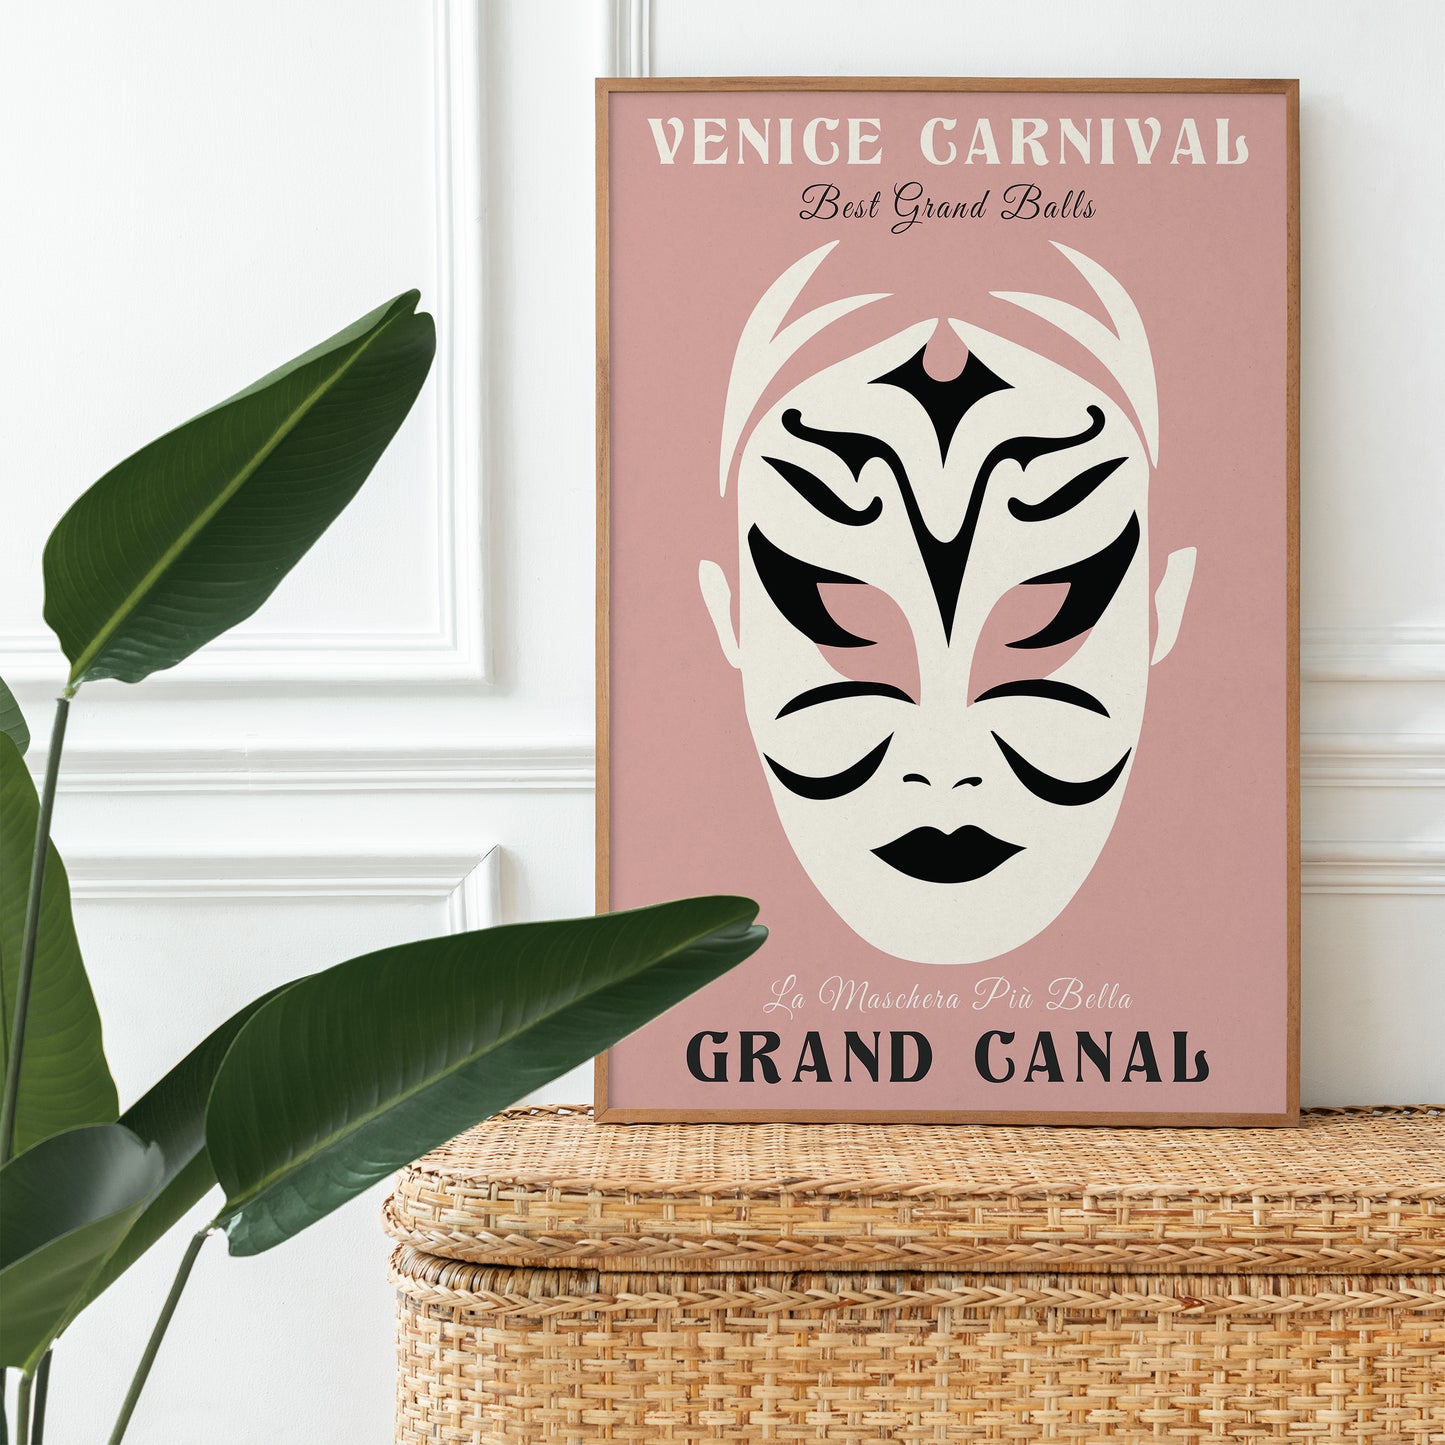 Venice Carnival Festival Poster